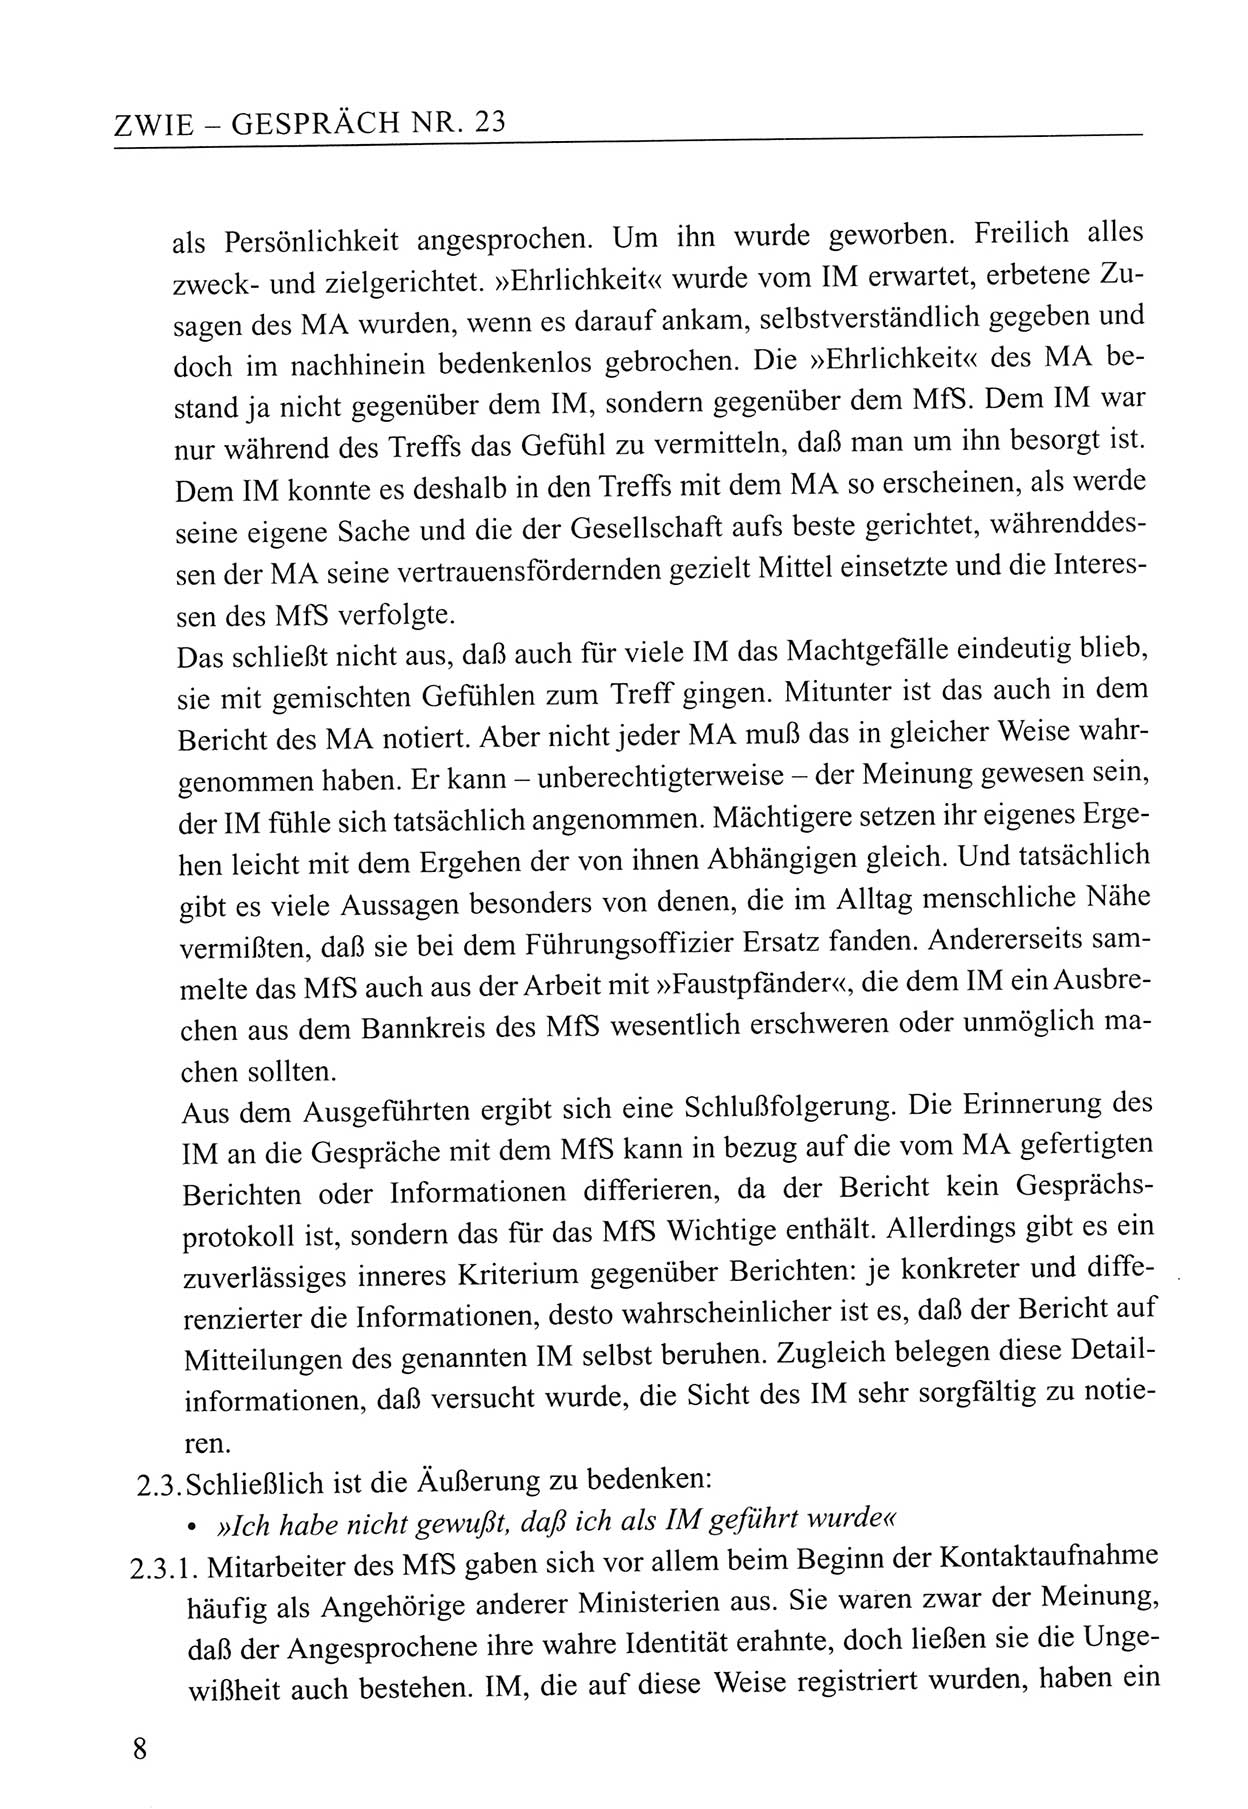 Zwie-Gespräch, Beiträge zum Umgang mit der Staatssicherheits-Vergangenheit [Deutsche Demokratische Republik (DDR)], Ausgabe Nr. 23, Berlin 1994, Seite 8 (Zwie-Gespr. Ausg. 23 1994, S. 8)